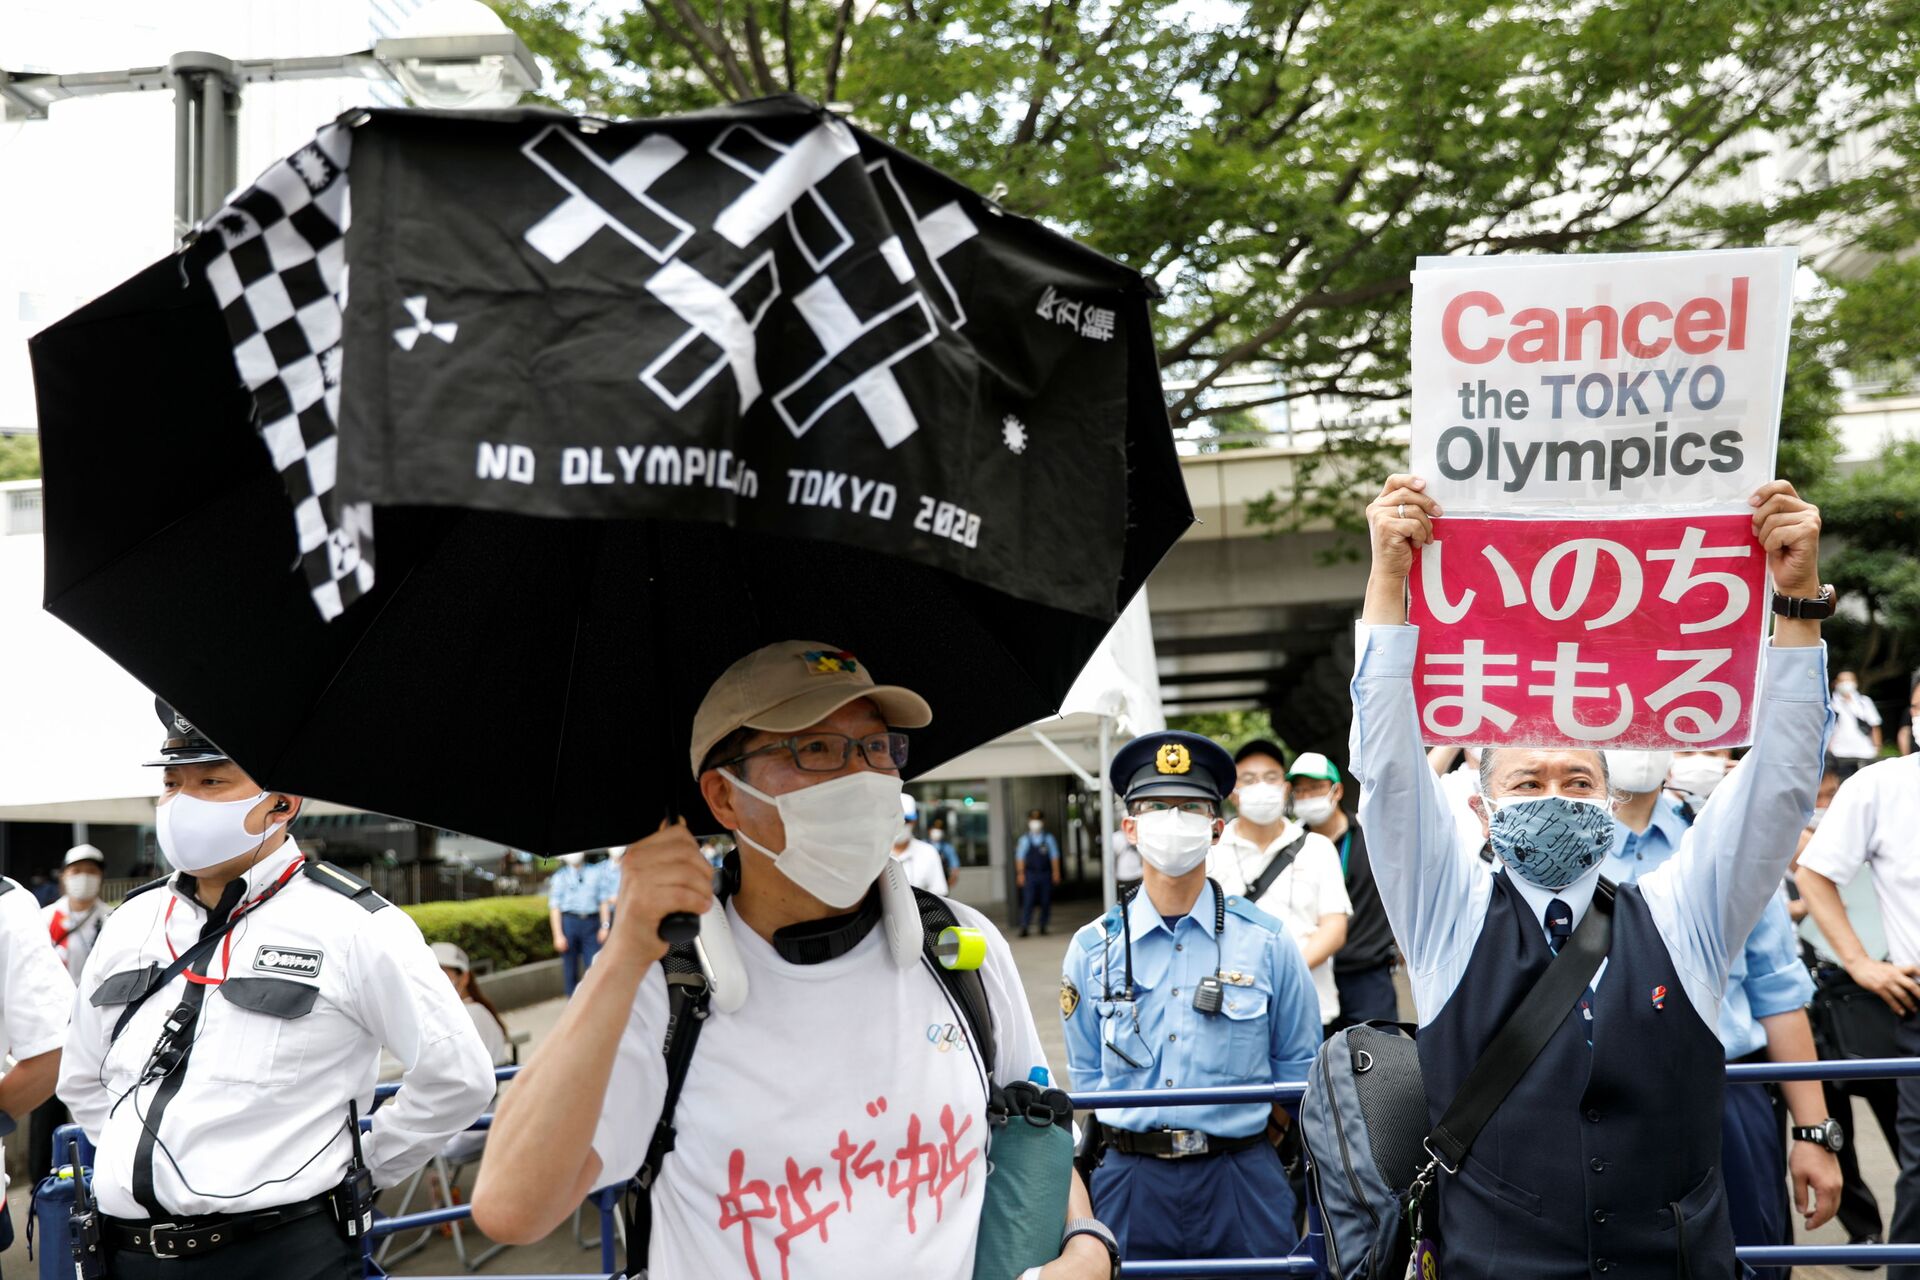 Hủy Thế vận hội: tổ chức biểu tình ở Tokyo phản đối Thế vận hội - Sputnik Việt Nam, 1920, 23.07.2021